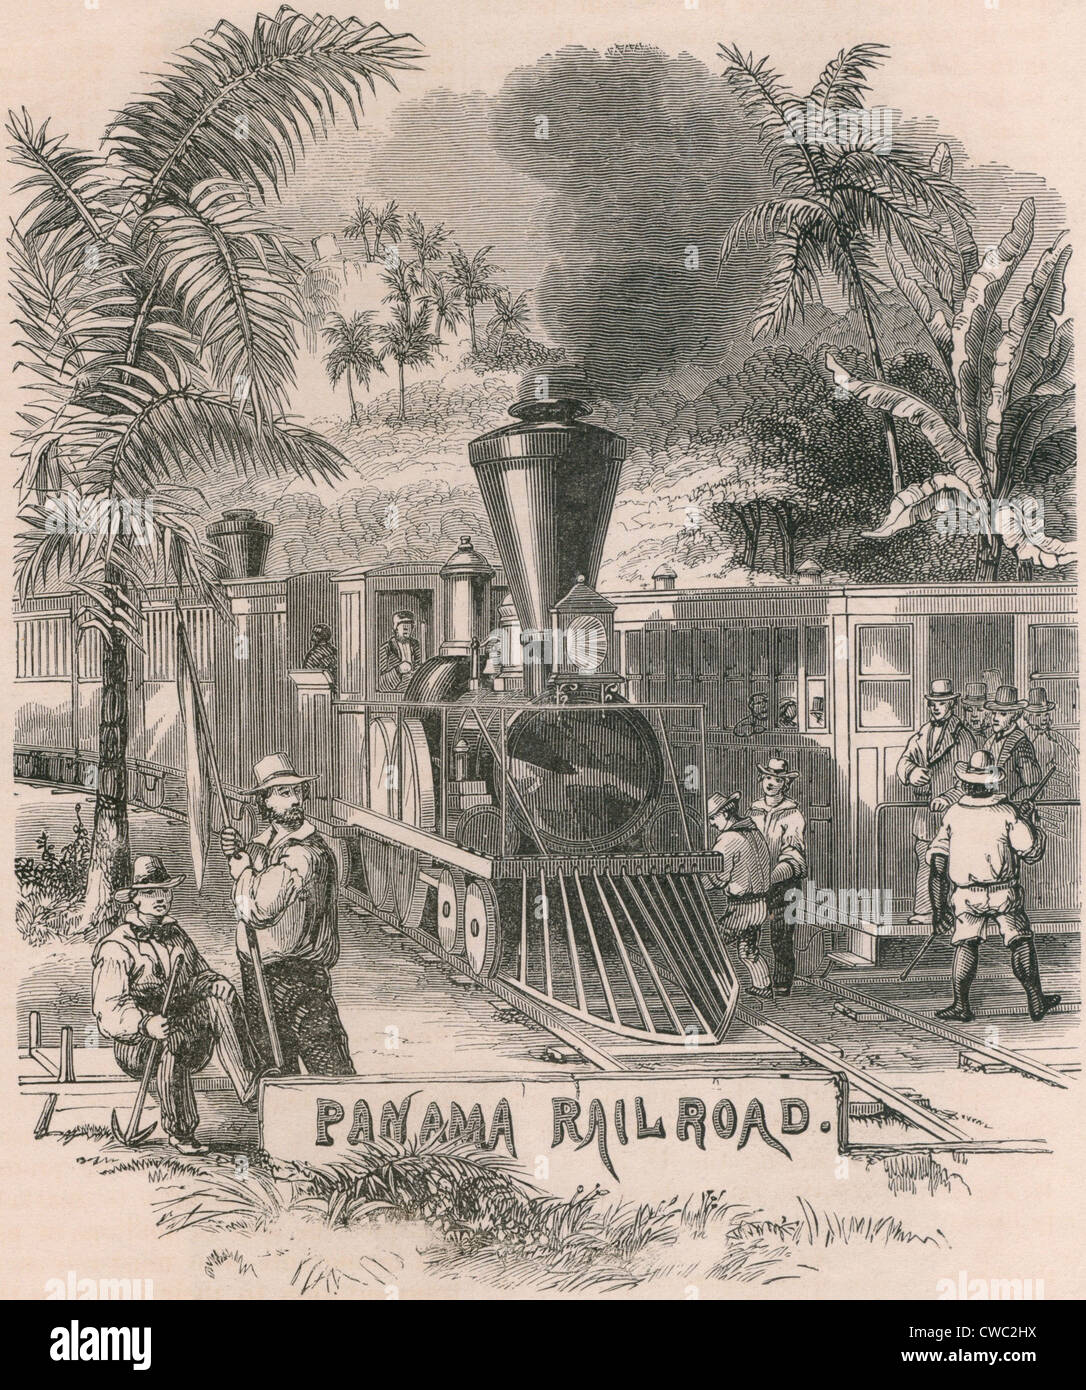 Der Panama Railroad überquert die fünfzig Meilen von Isthmus bis zum Pazifik. Begonnen im Jahr 1850 und wurde im Jahr 1855 It Kosten über abgeschlossen Stockfoto